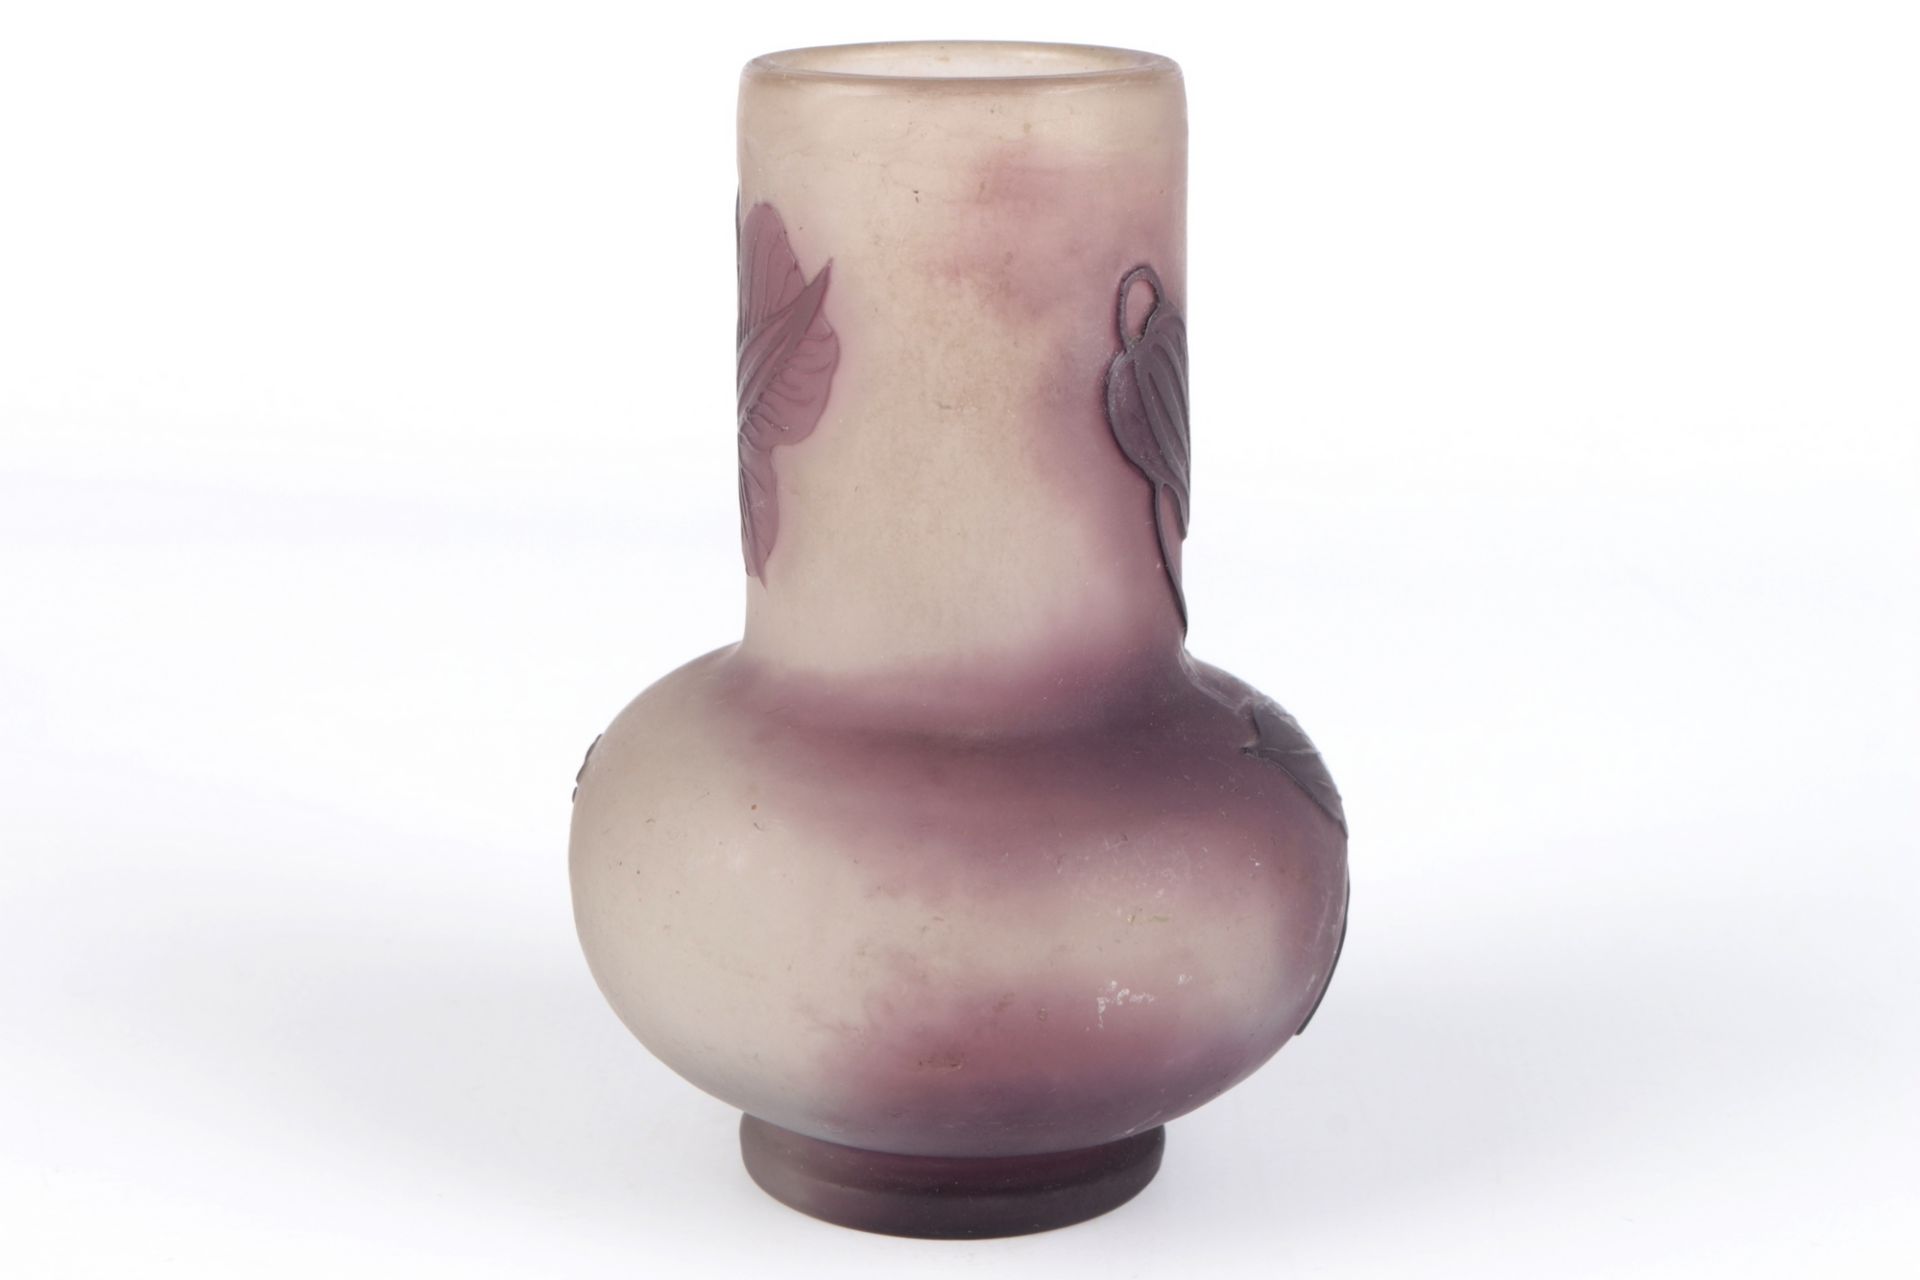 Emile Galle (1846-1904) Jugendstil Vase, french art nouveau glass vase, - Bild 3 aus 4